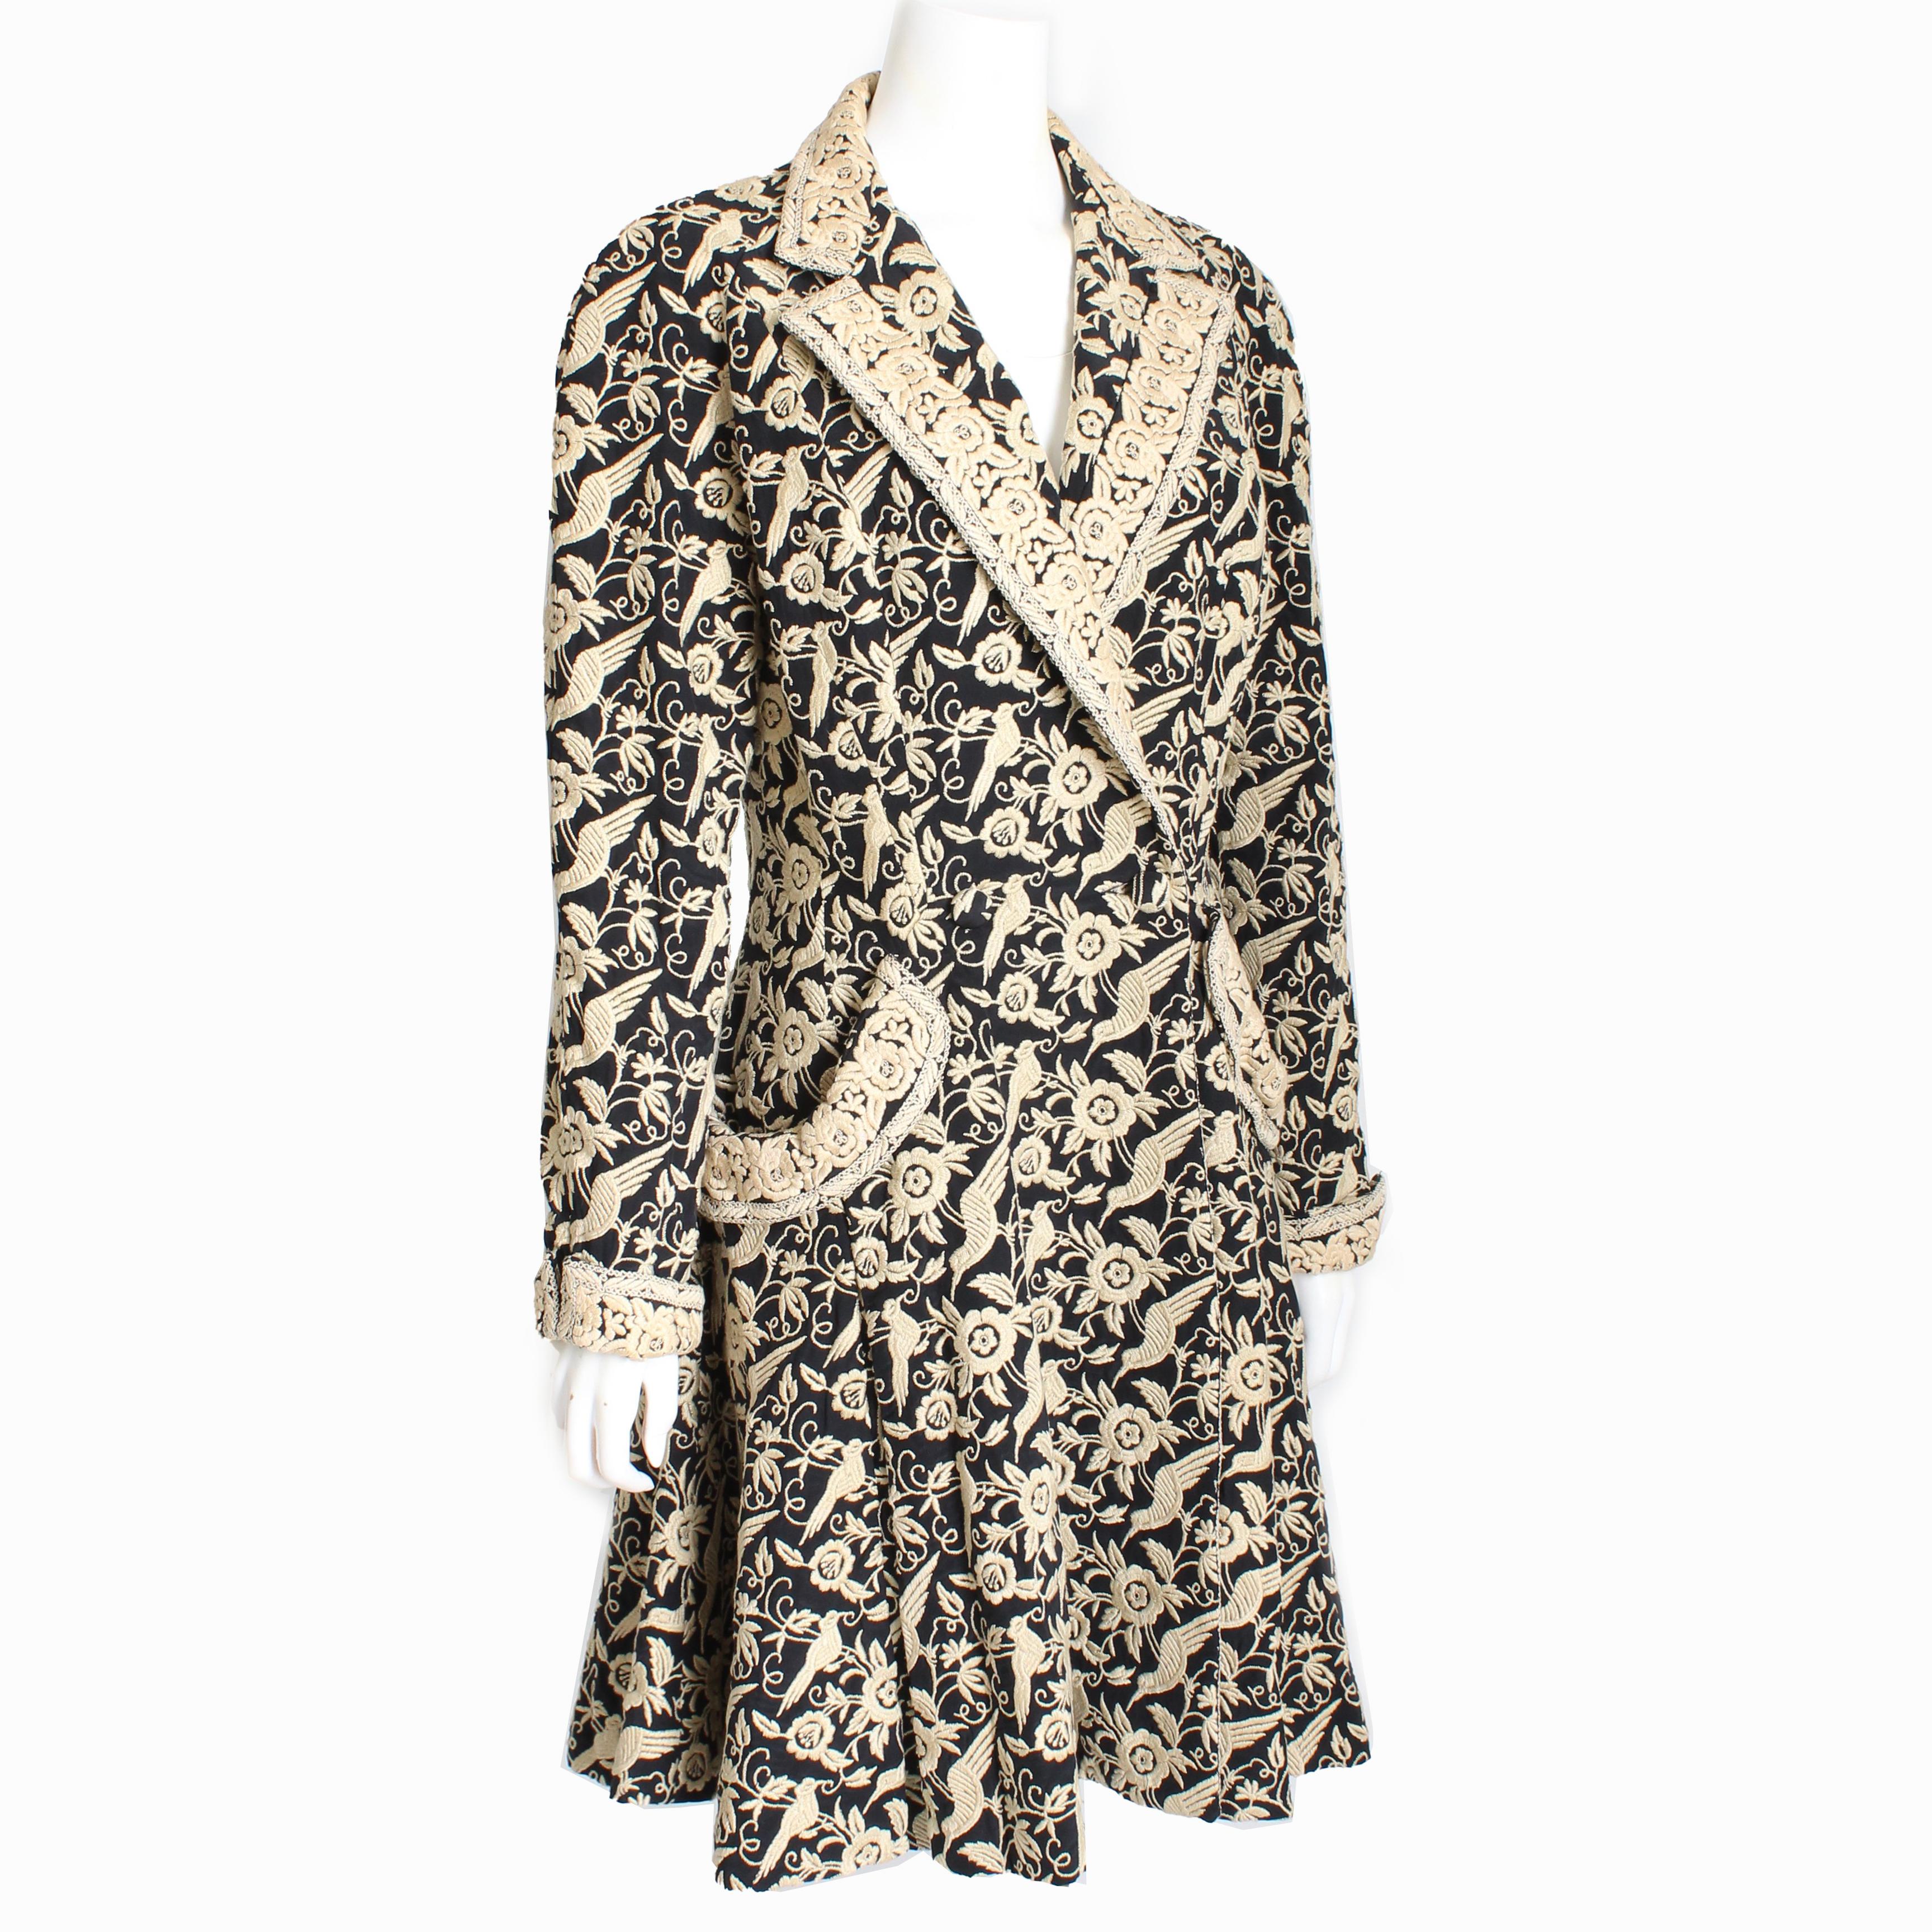 Manteau vintage de style princesse de Norma Kamali, d'occasion, probablement confectionné au début des années 90.  Réalisé en soie noire, il présente un motif brodé d'oiseaux et de fleurs sur l'ensemble de la pièce.
manches à revers et poches